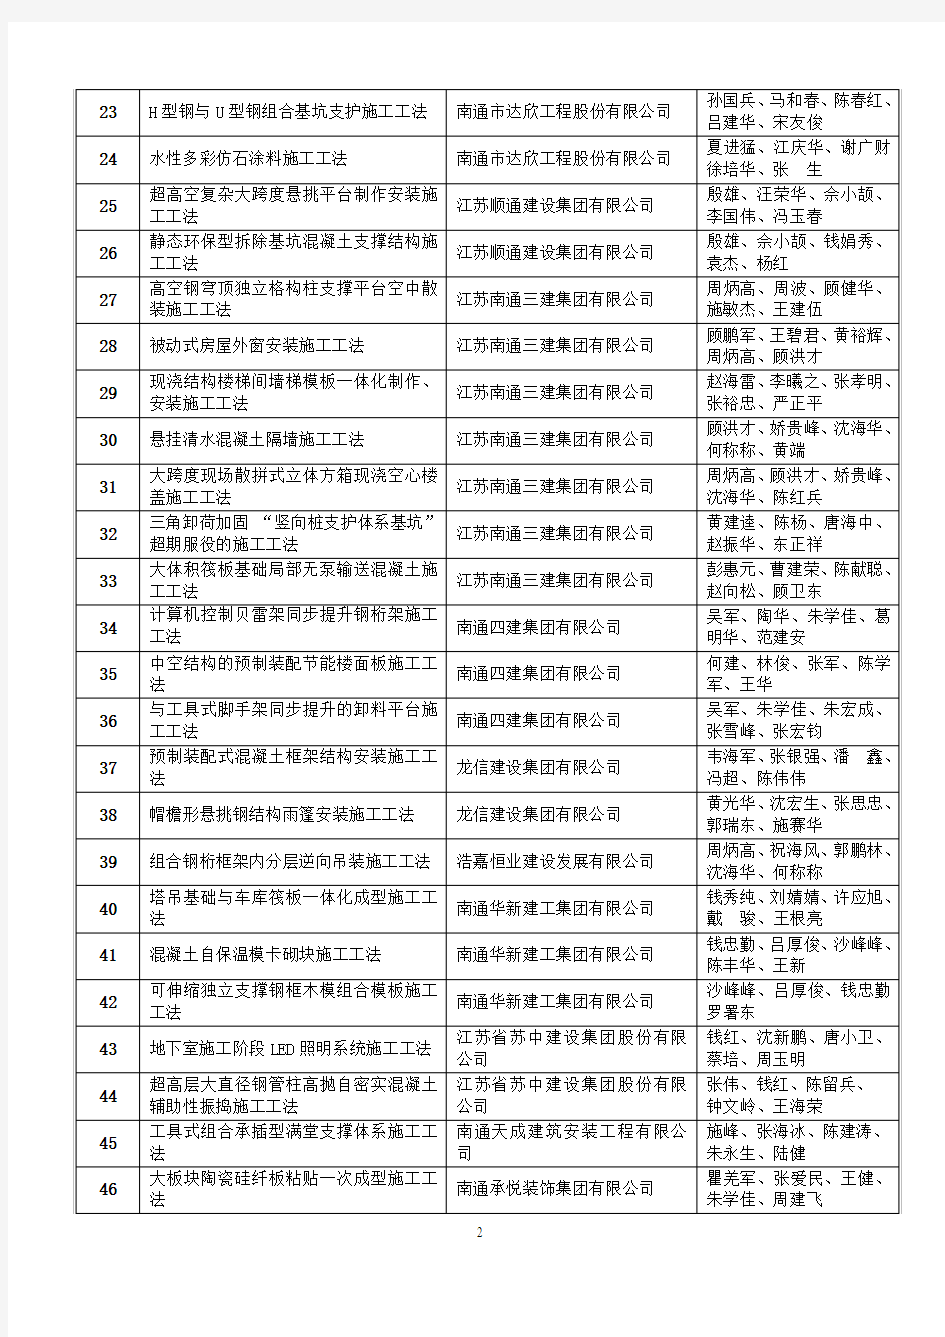 2015年度第一批江苏省工程建设省级工法名单